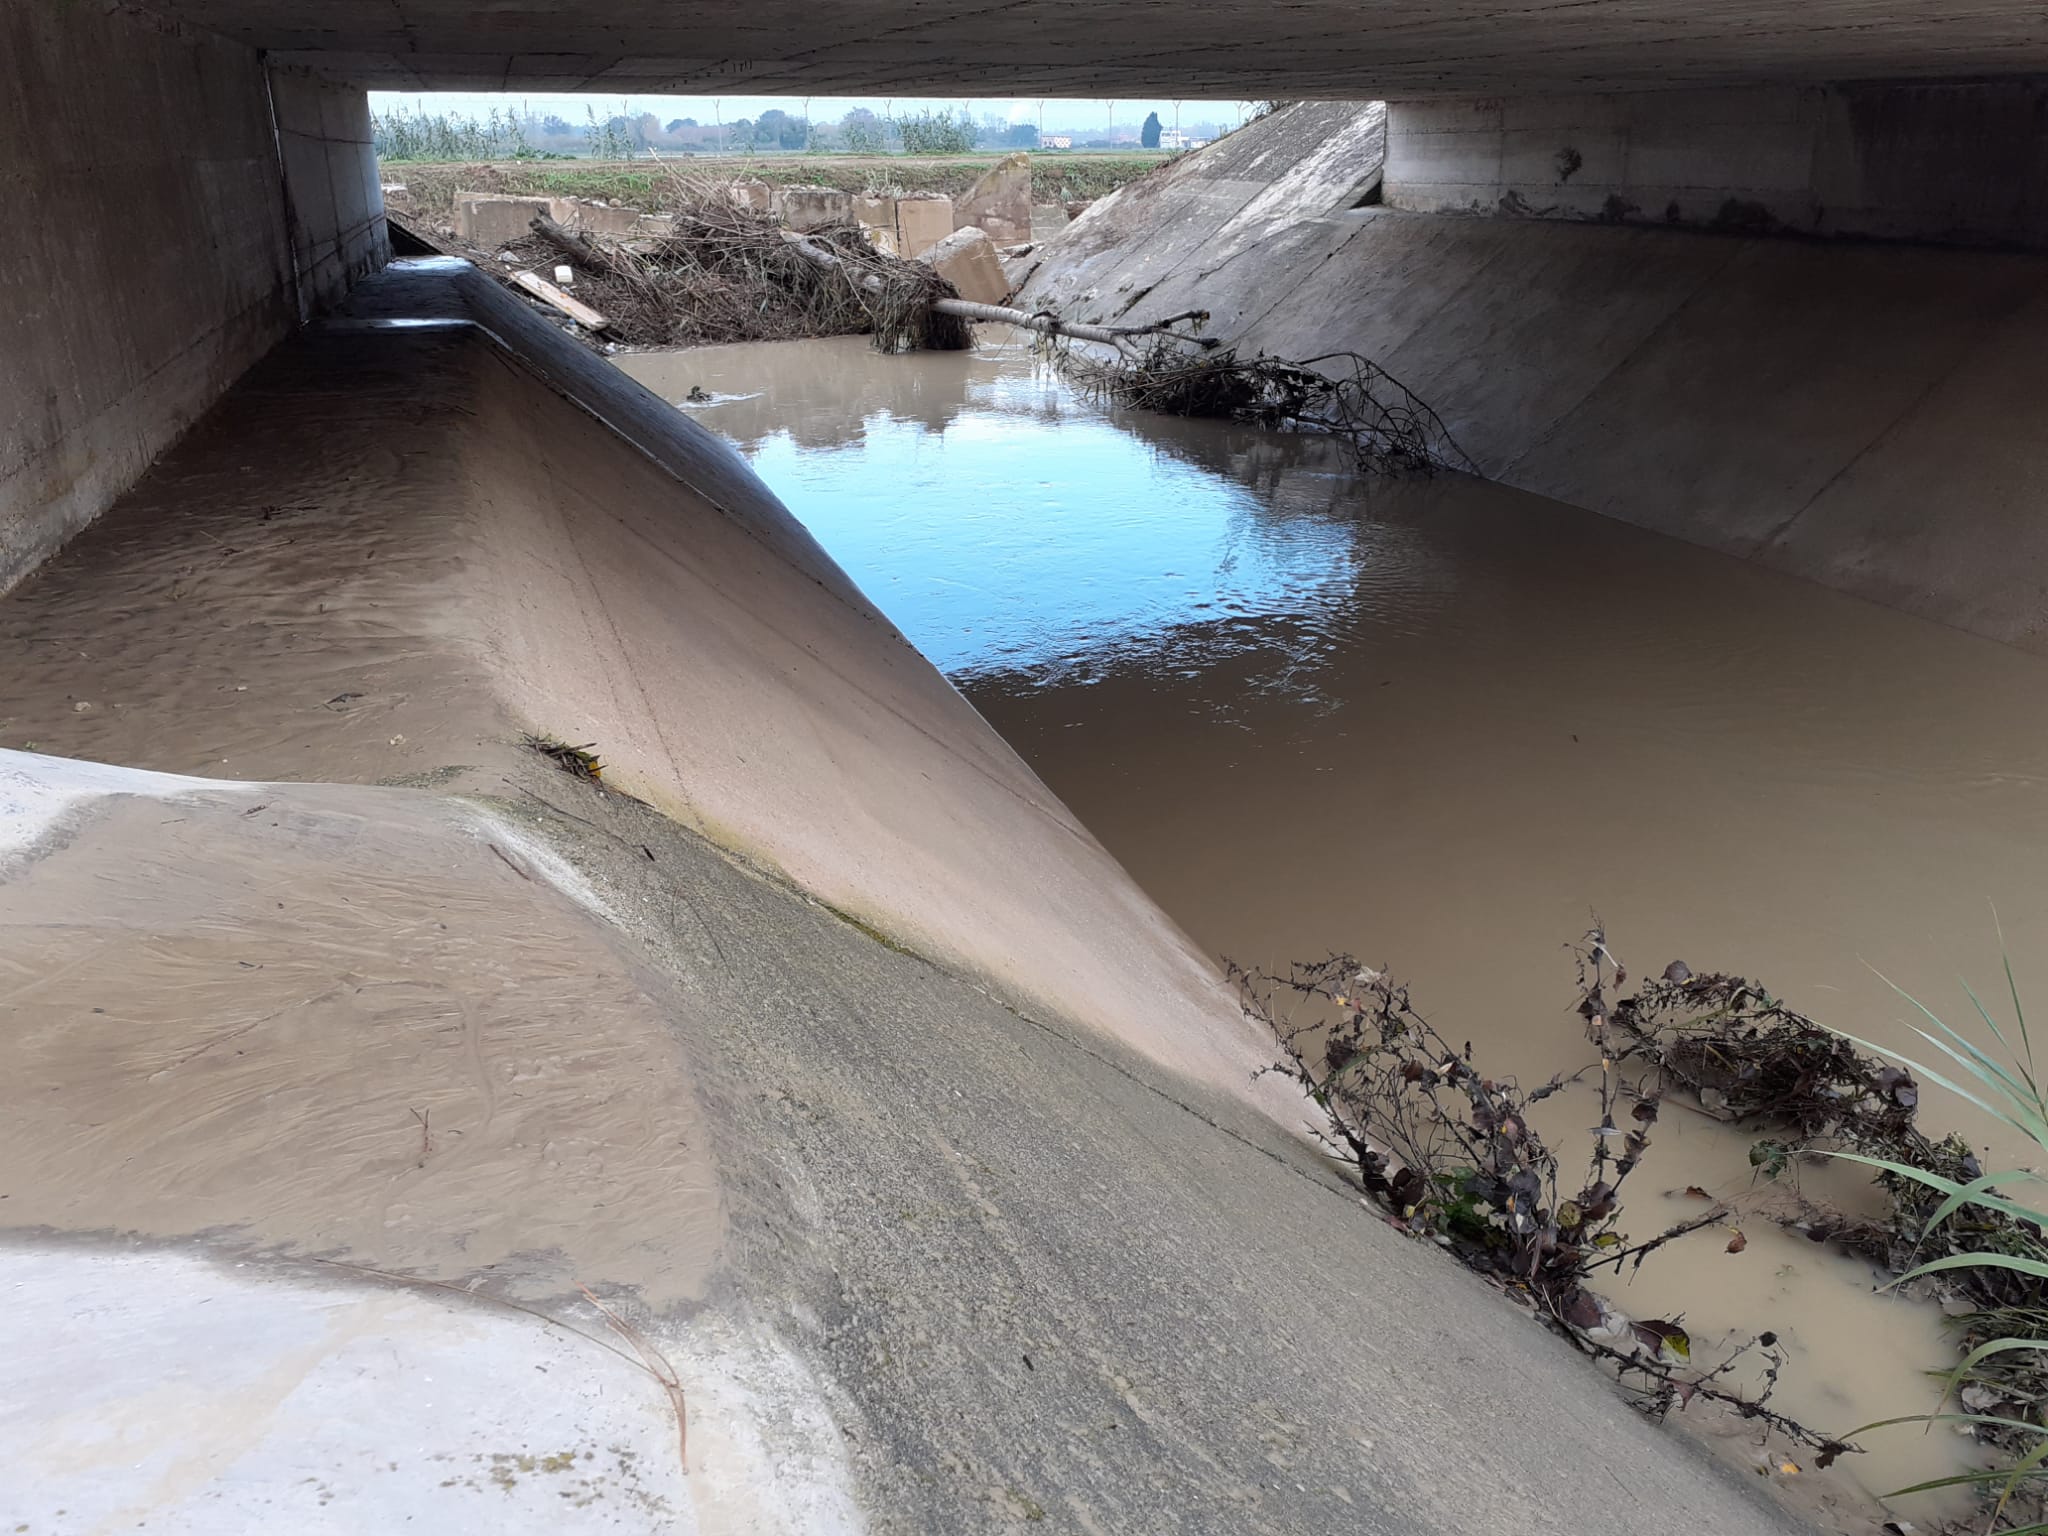 foto-3-fosso-s-sebastiano-sedimenti-di-terra-sopra-largine-sotto-ponte-ferrovia-2021-11-17-08-33-14.jpg